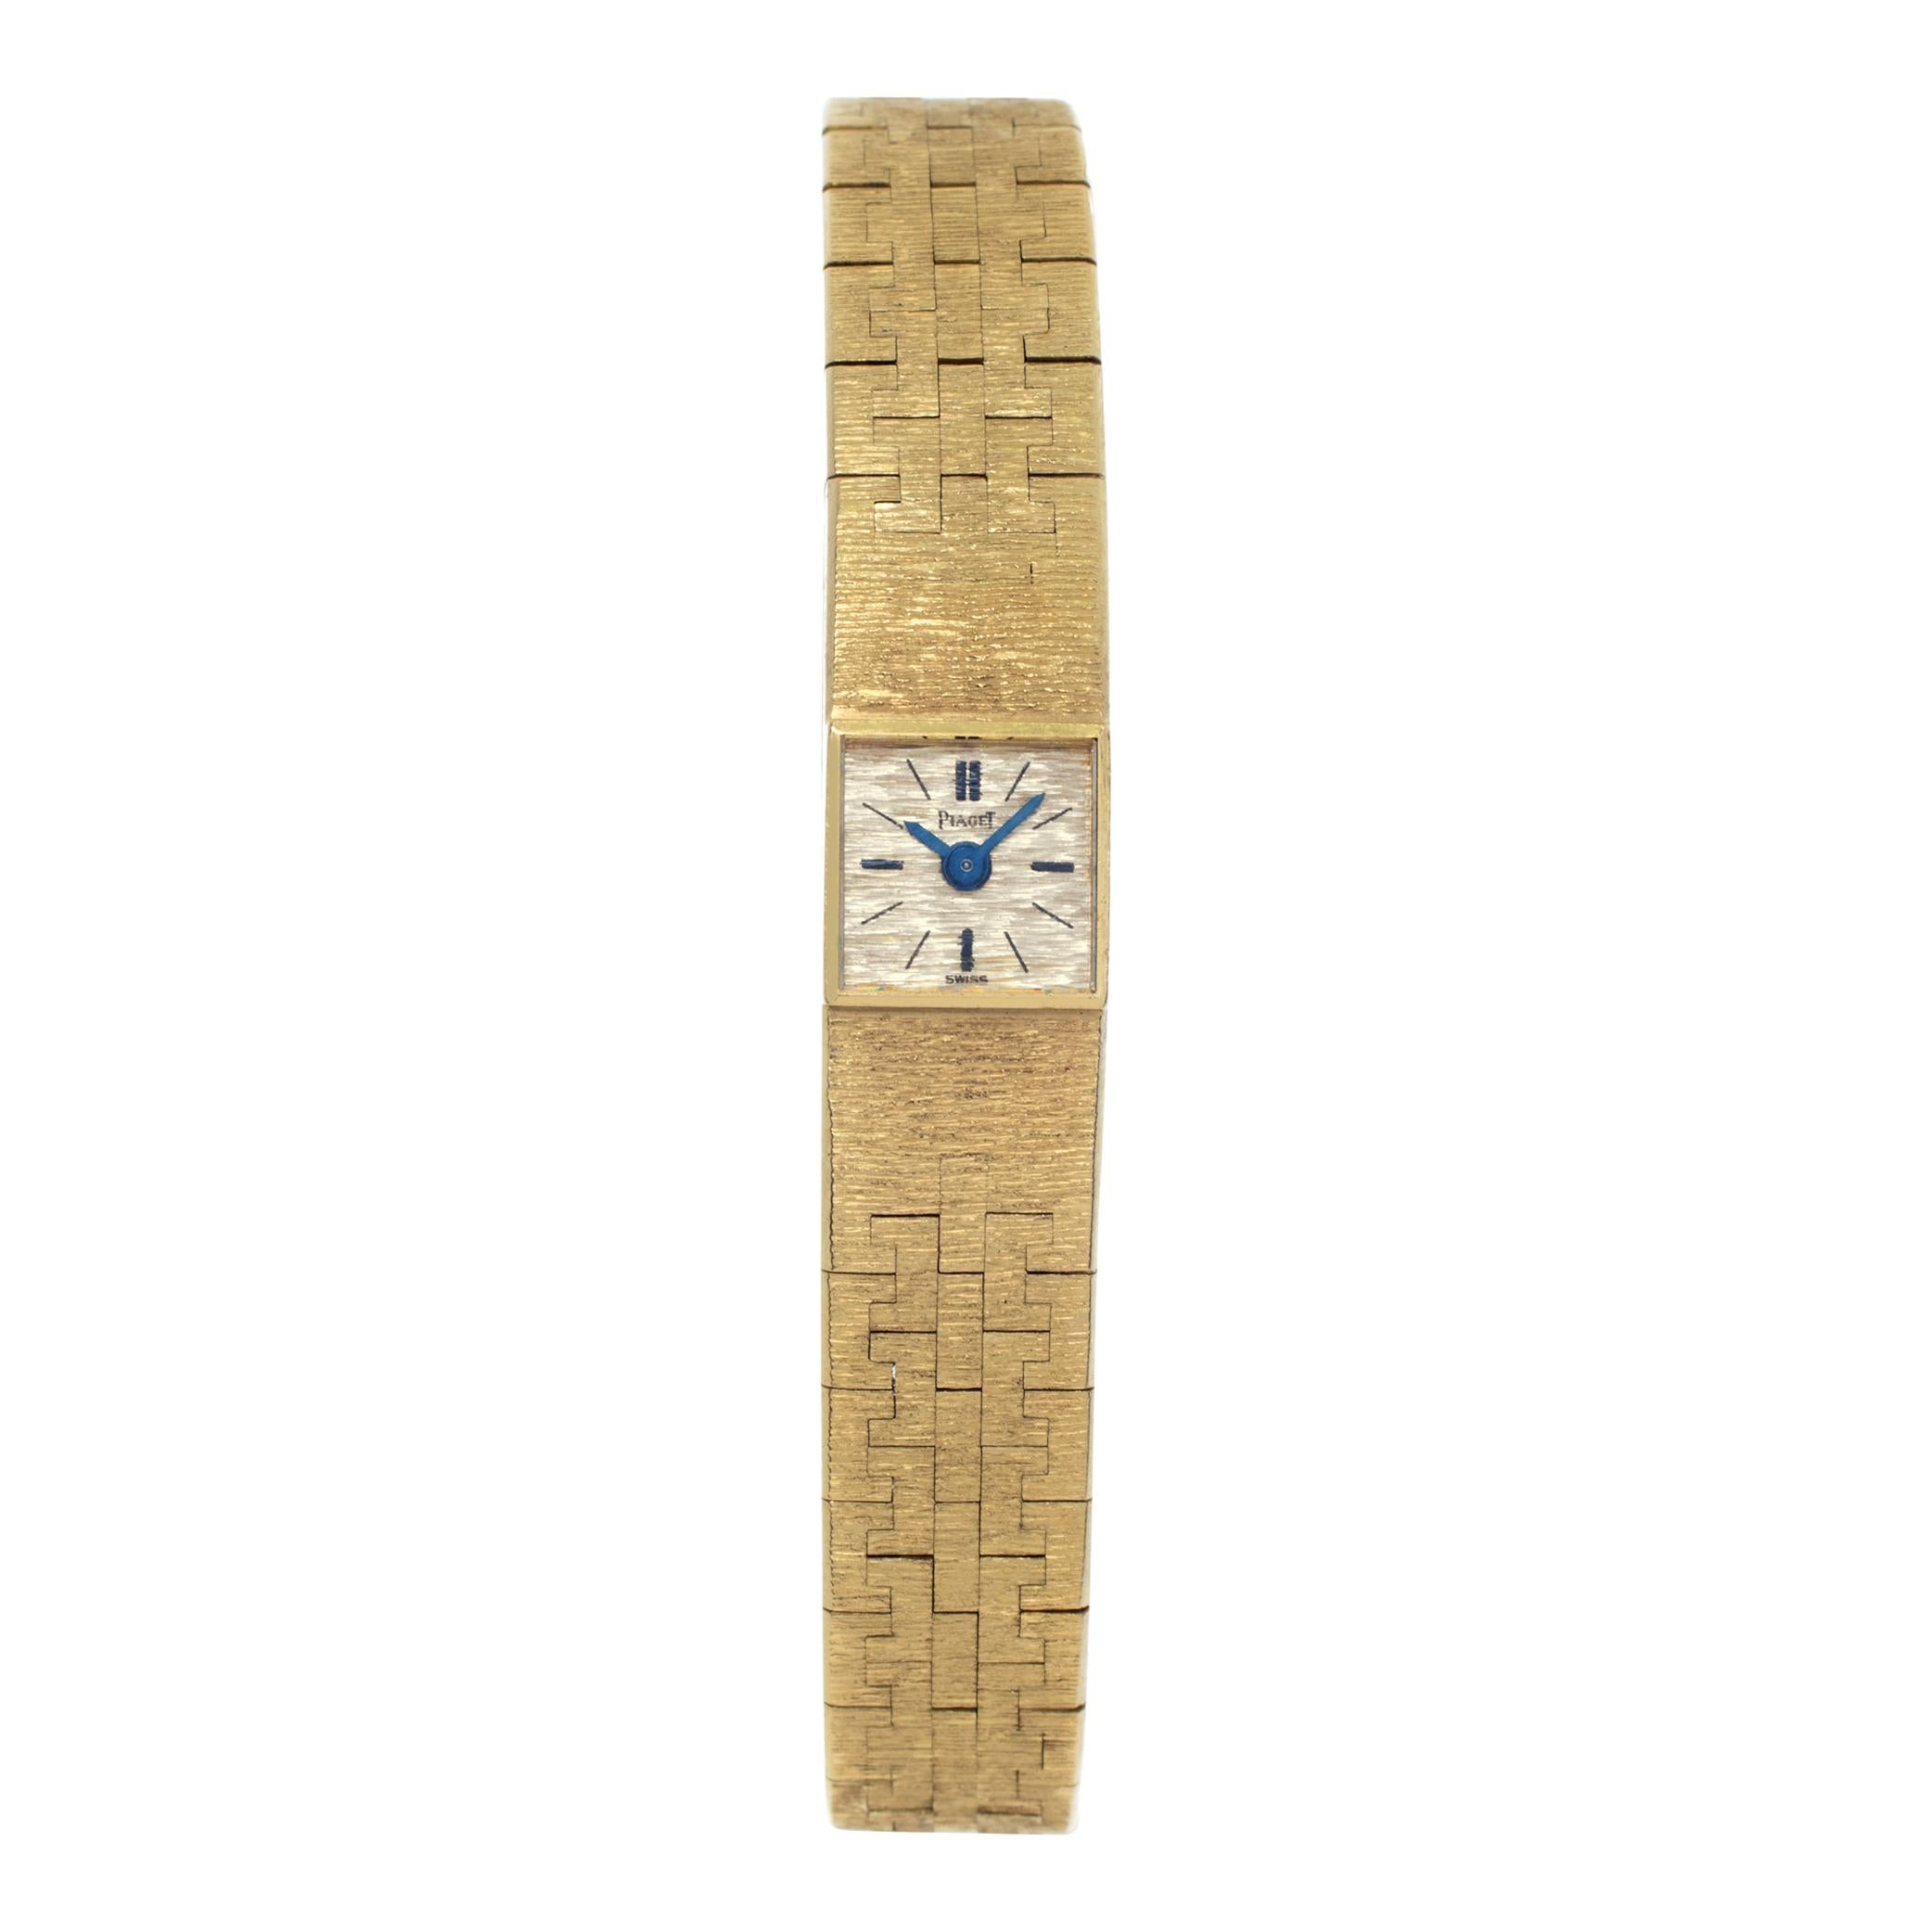 Piaget Classic Montre-bracelet manuelle en or jaune 18 carats Réf 1001 AG